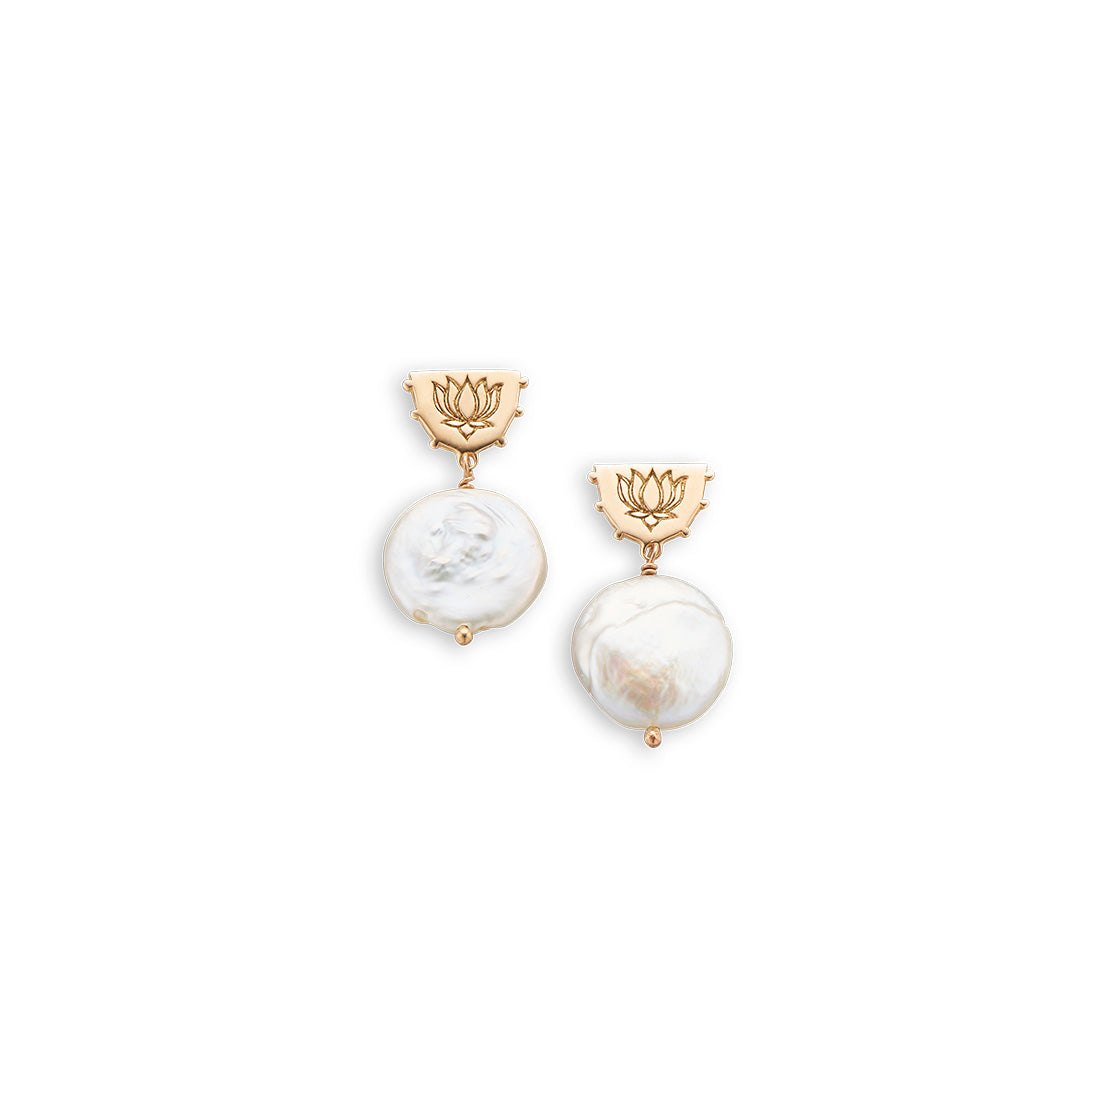 Lotus pearl earrings